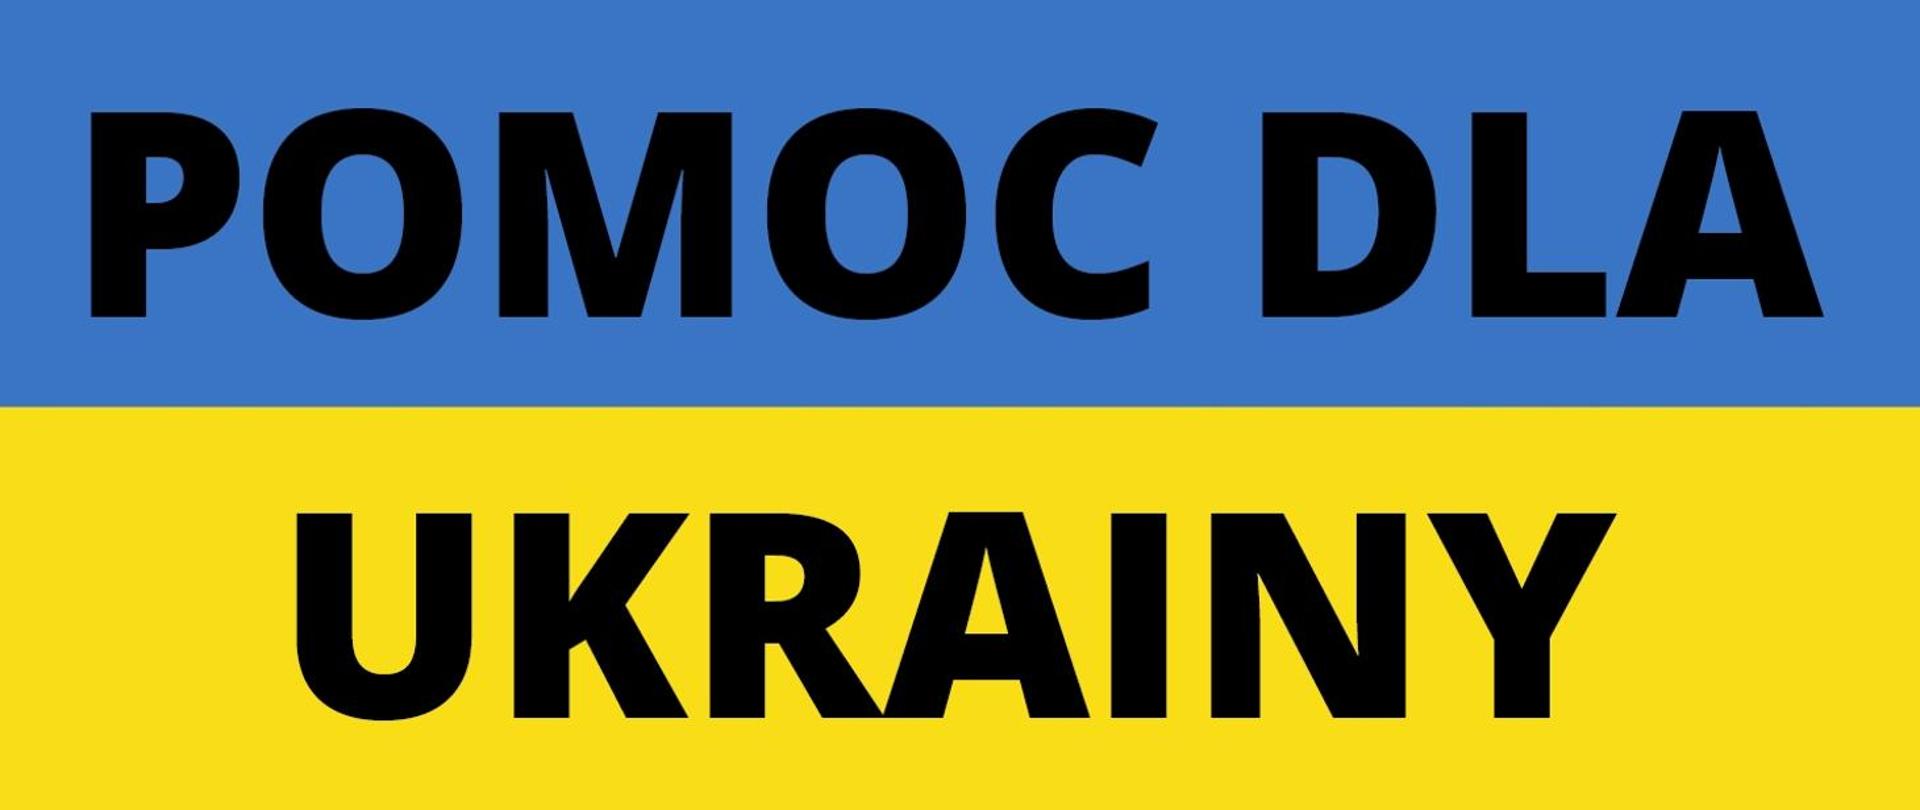 Na zdjęciu widać flagę Ukrainy. Na górze niebieski pasek na dole żółty. Na niebieskim pasku napis pomoc dla a na żółtym Ukrainy.